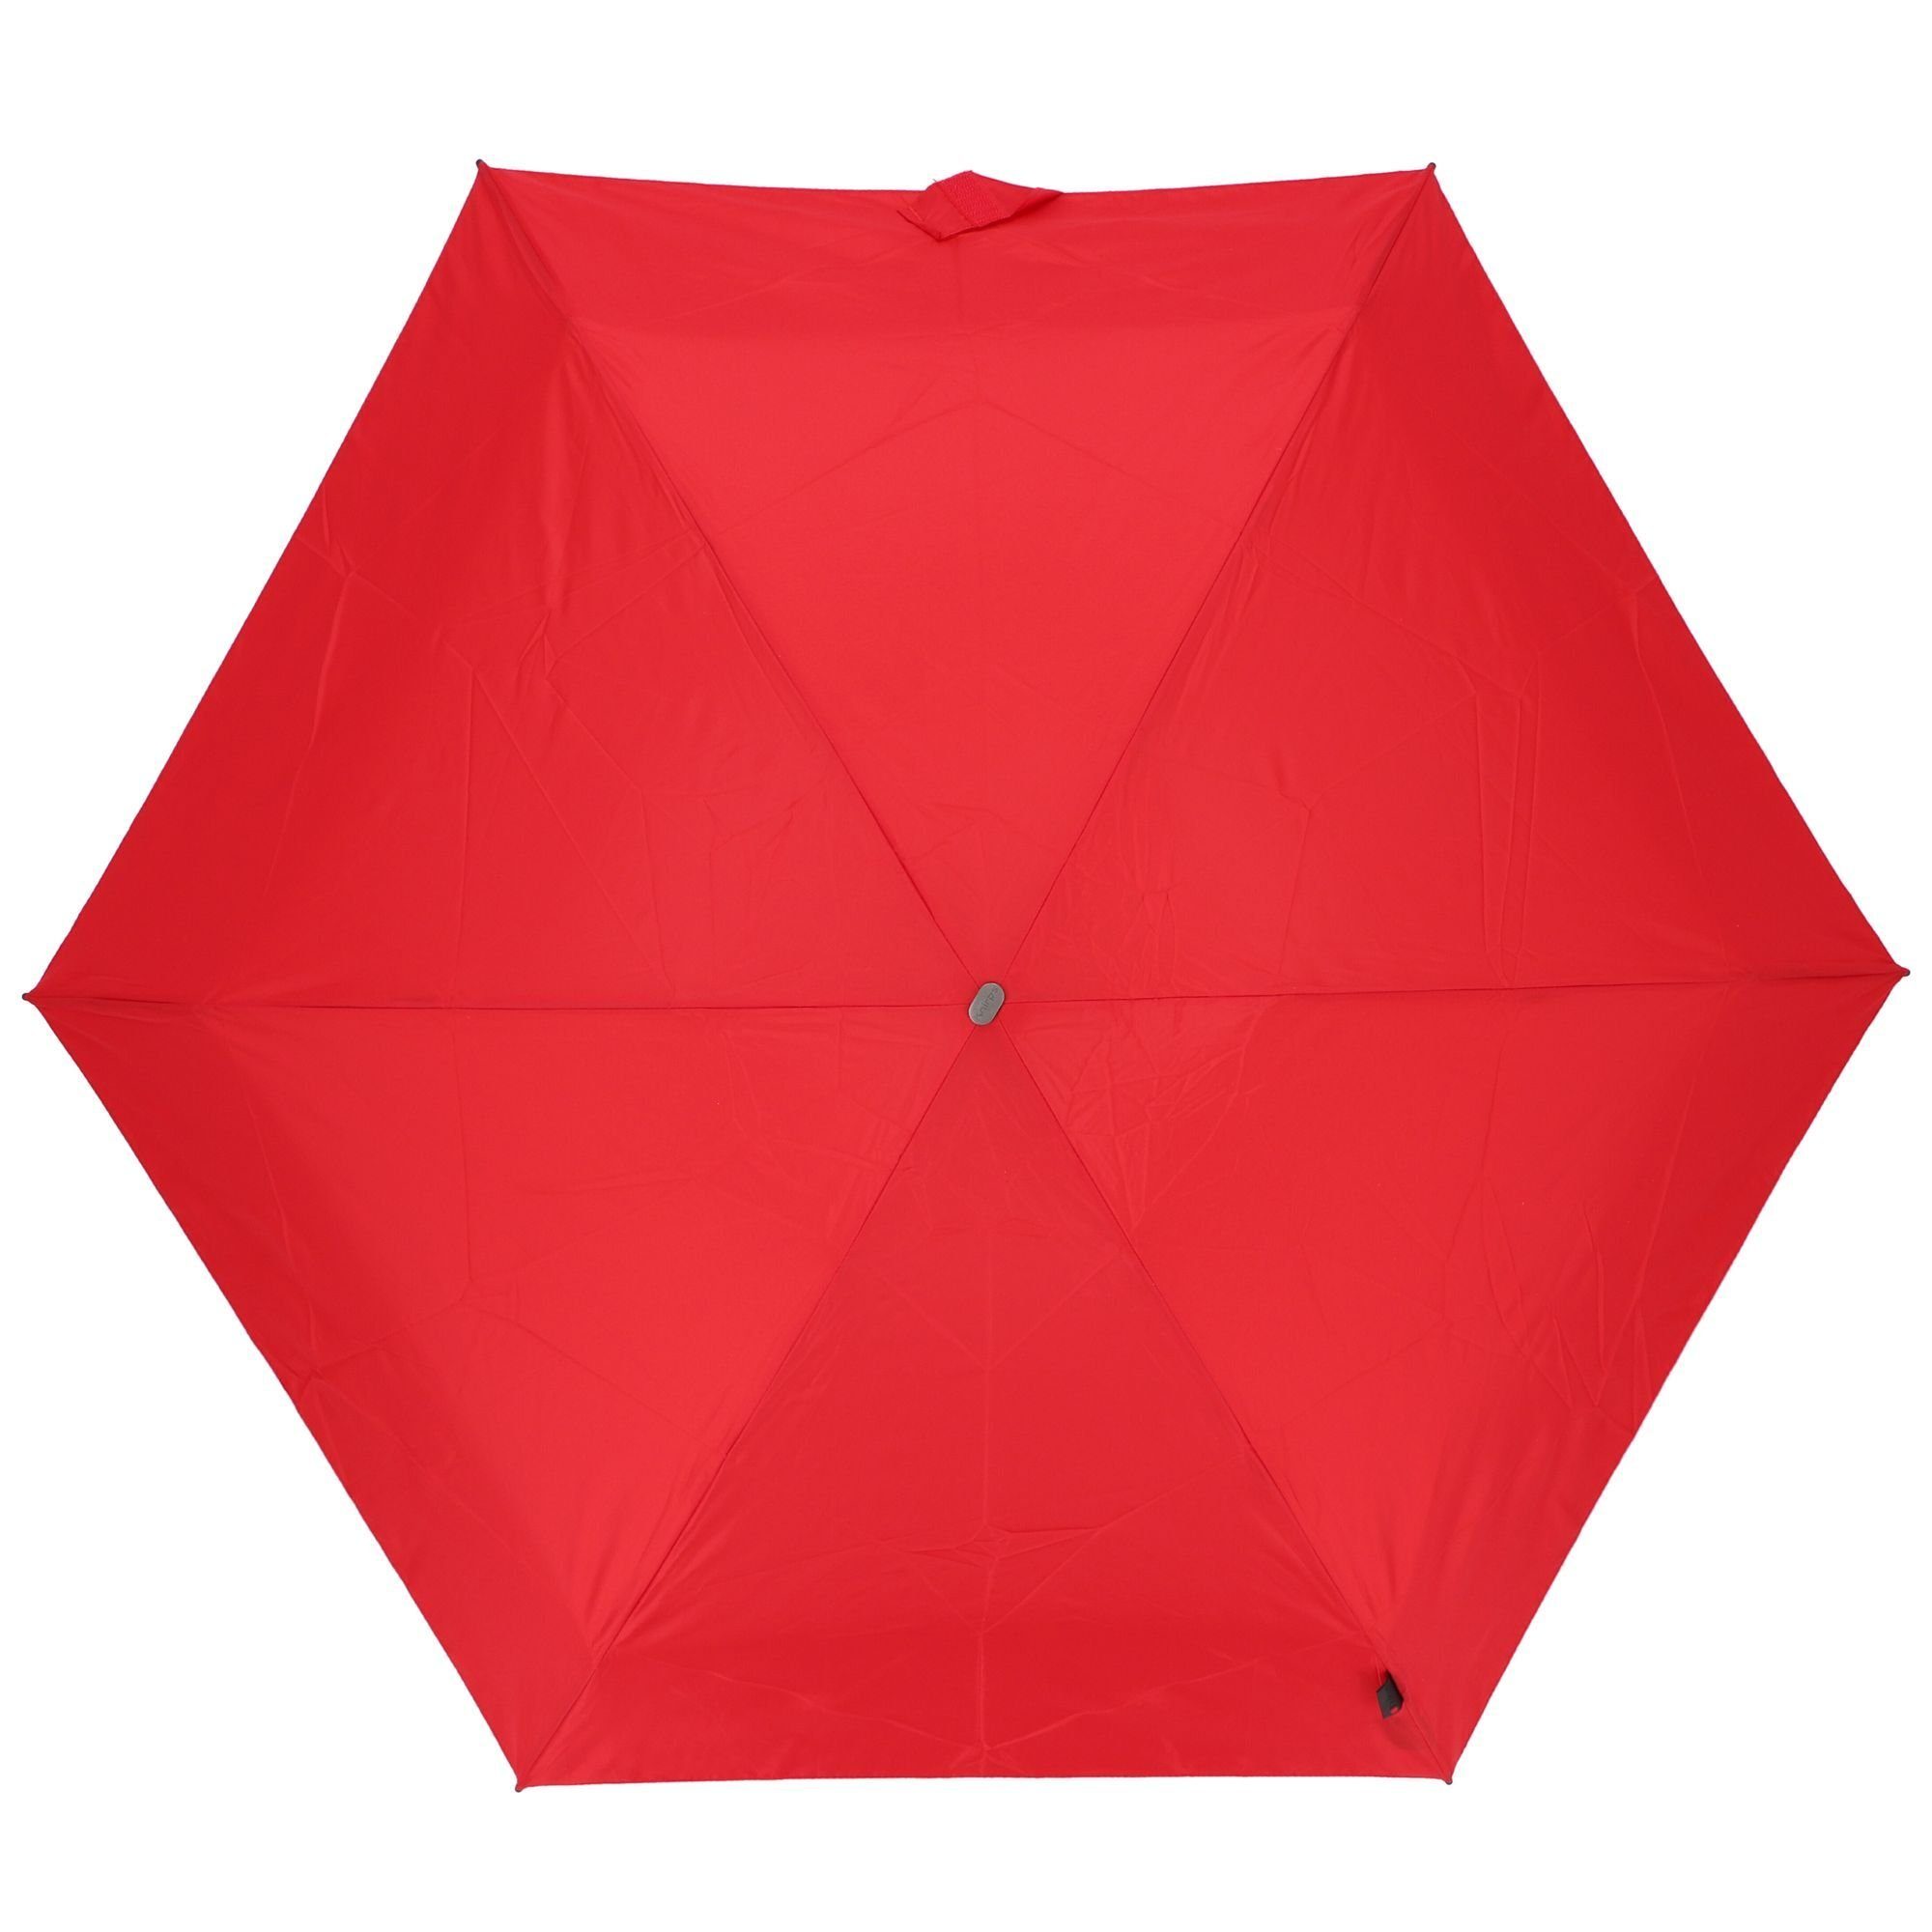 Taschenregenschirm Knirps® red Manual